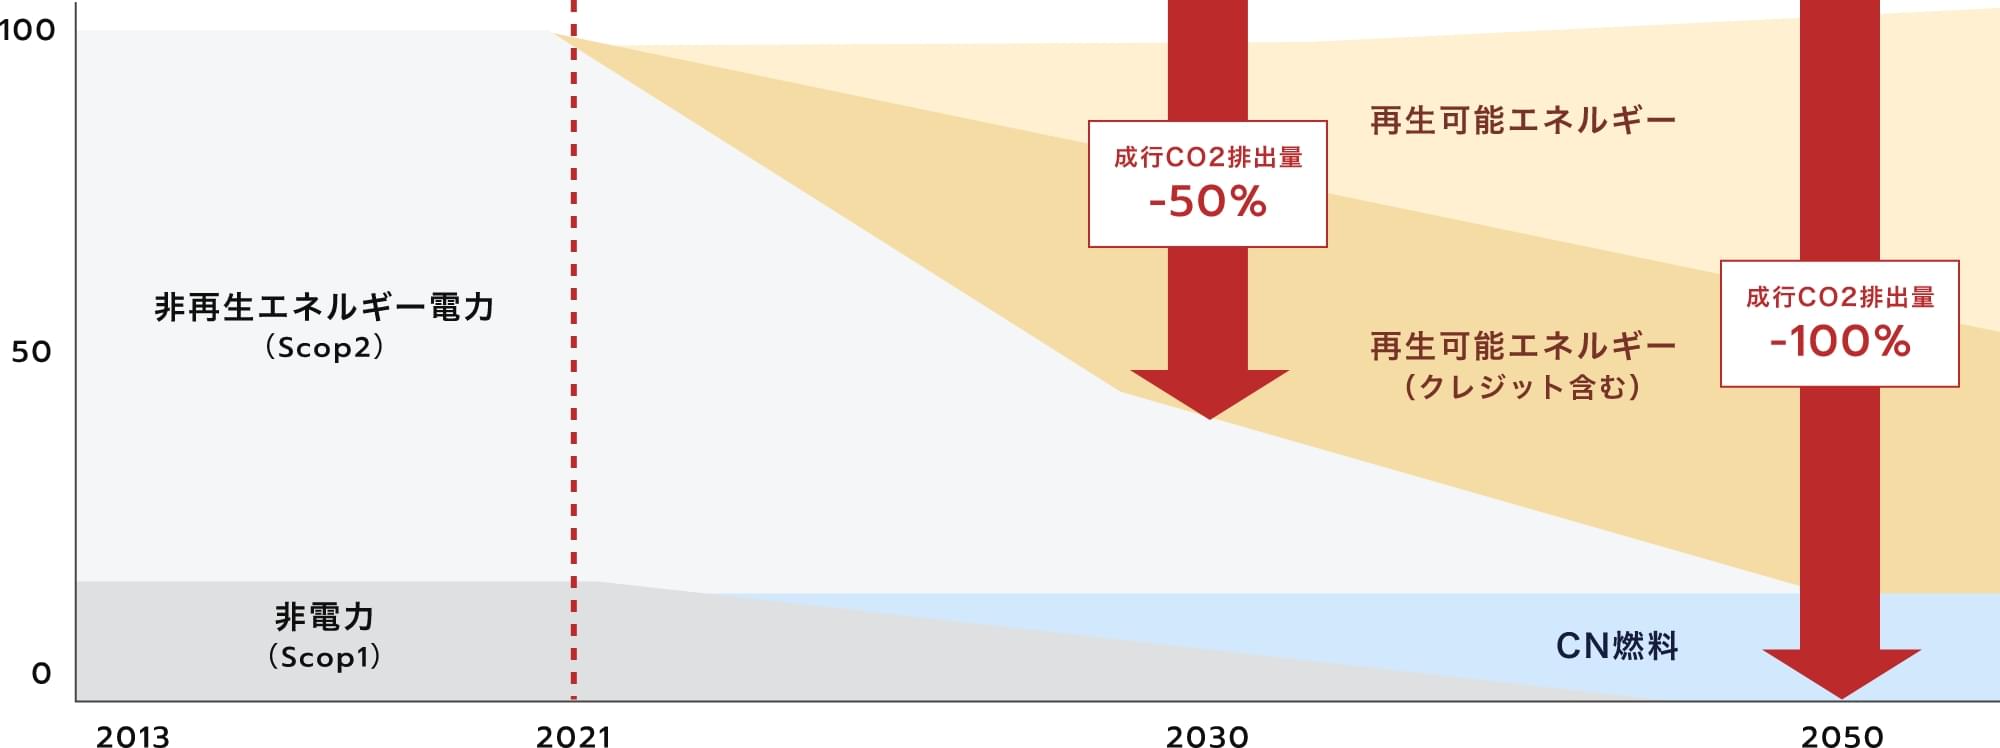 2050年までのカーボンニュートラルに向けた取り組みによるエネルギー推移